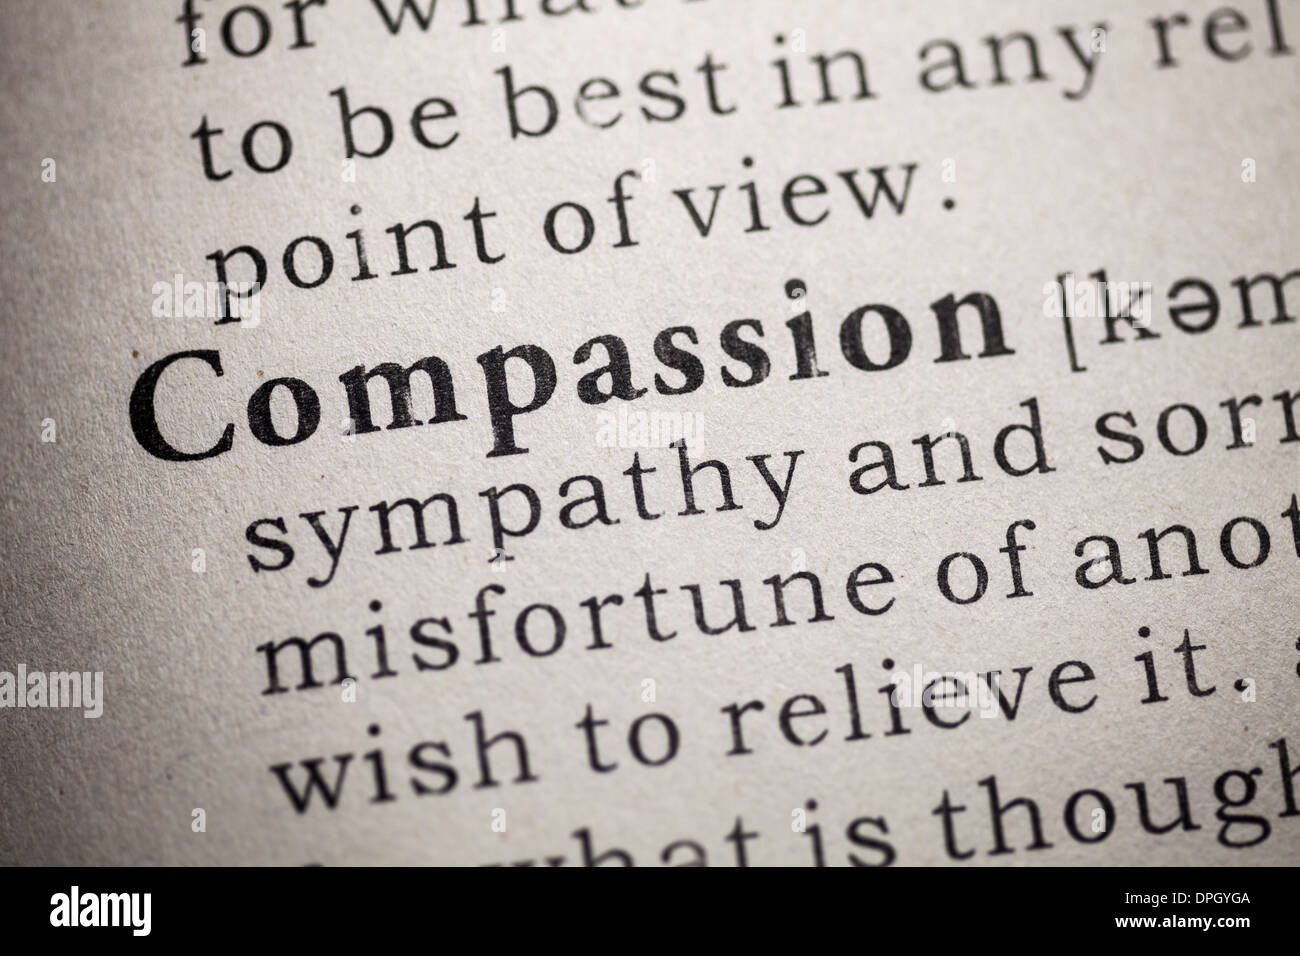 Fake Dizionario, definizione del dizionario di compassione. Foto Stock